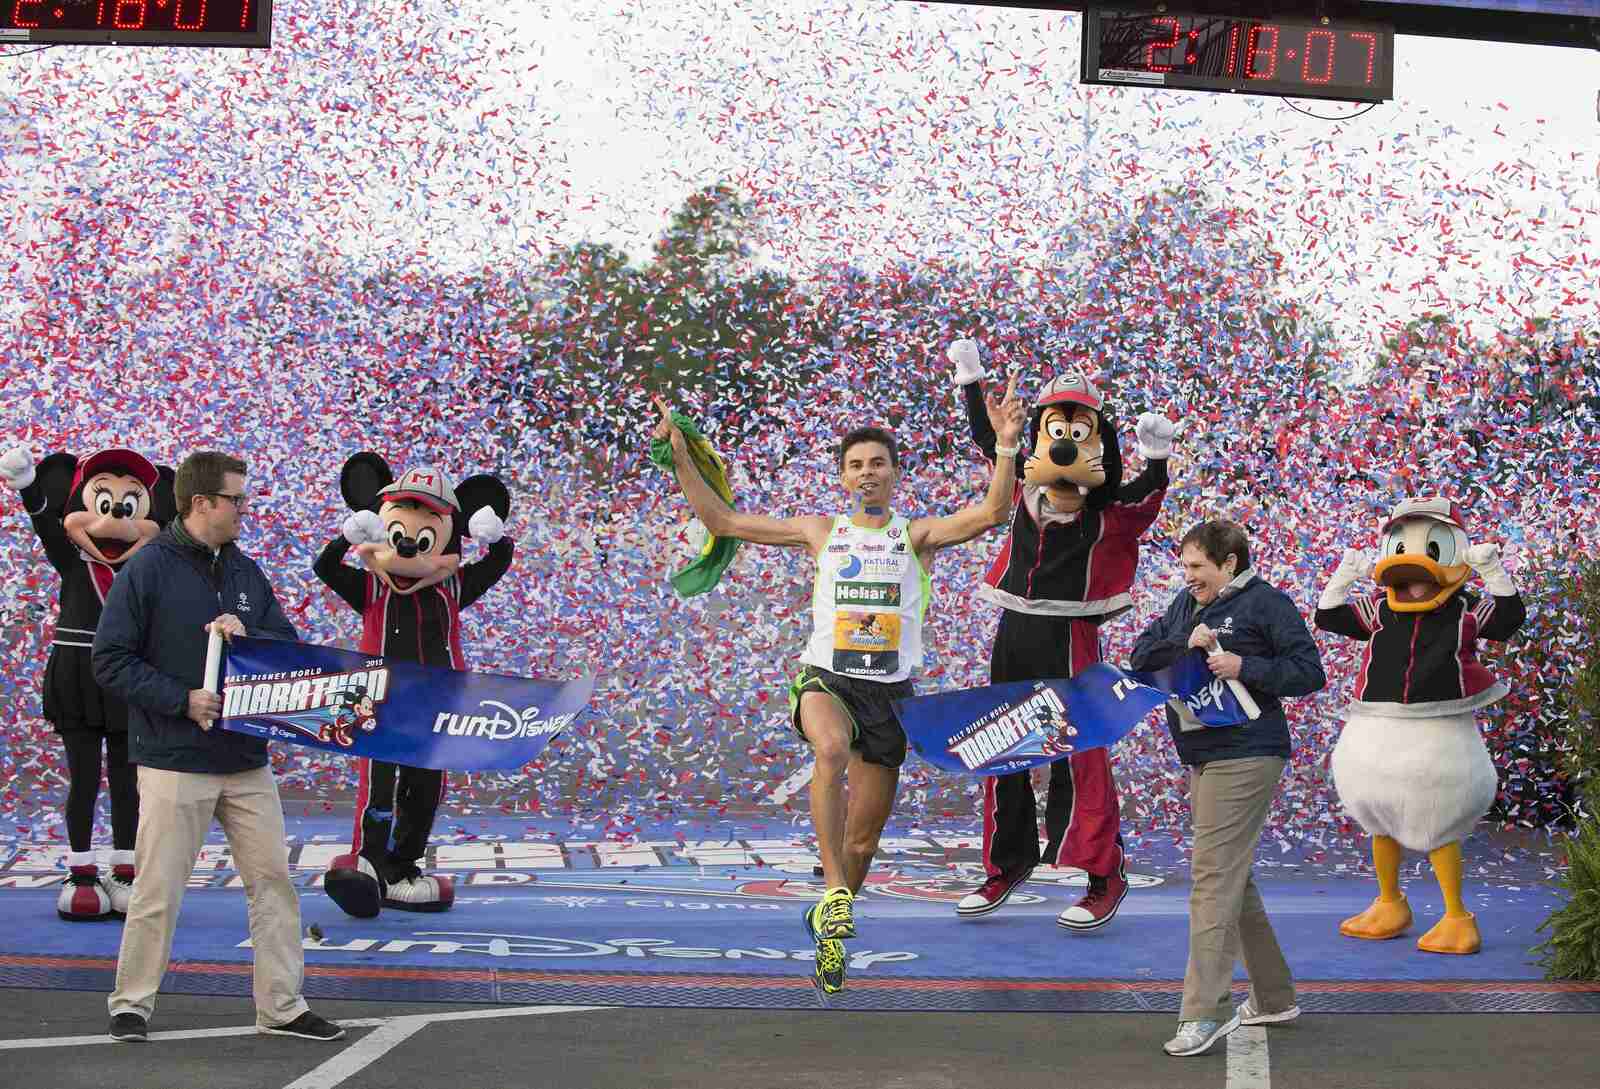 What Do You Get For Running Disney Half Marathon